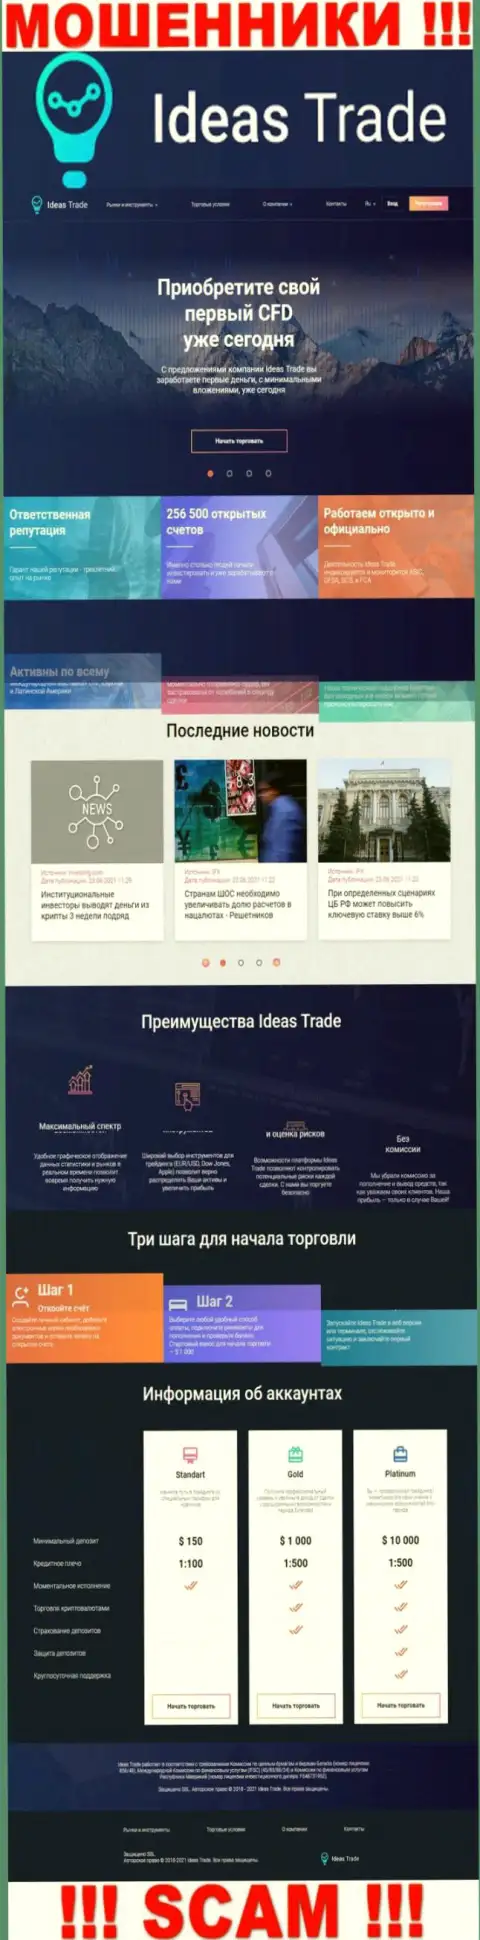 Официальный сайт мошенников IdeasTrade